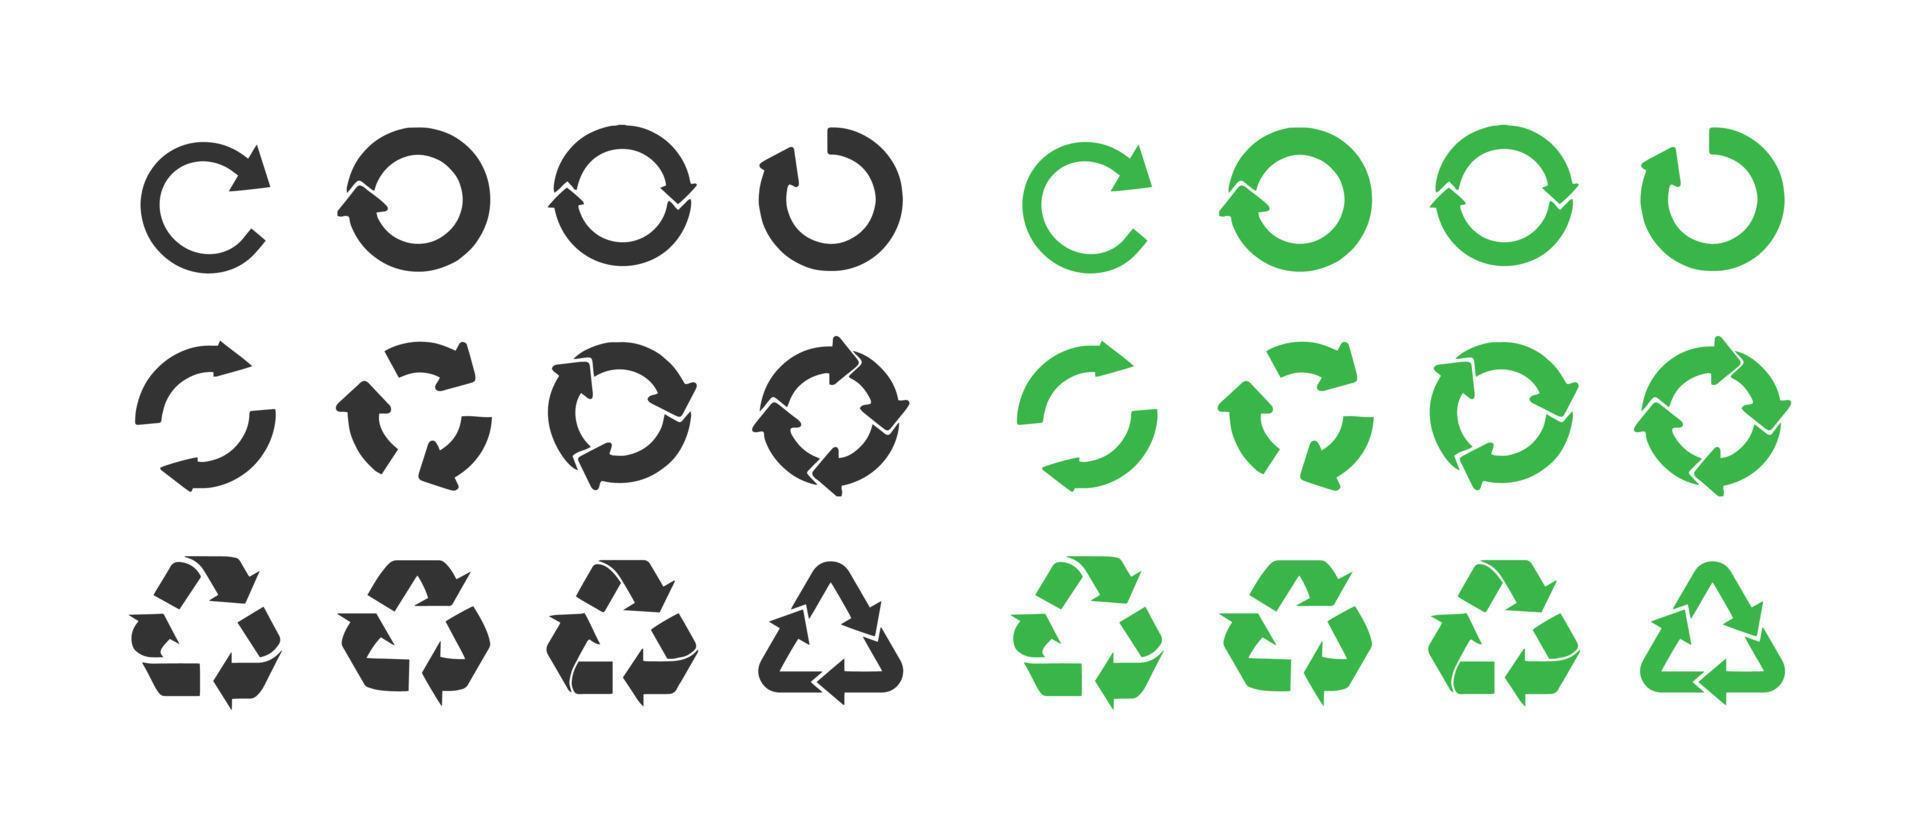 riciclare e ecologia icone collezione. impostato di cerchio freccia vettore icone. riciclare raccolta differenziata simbolo